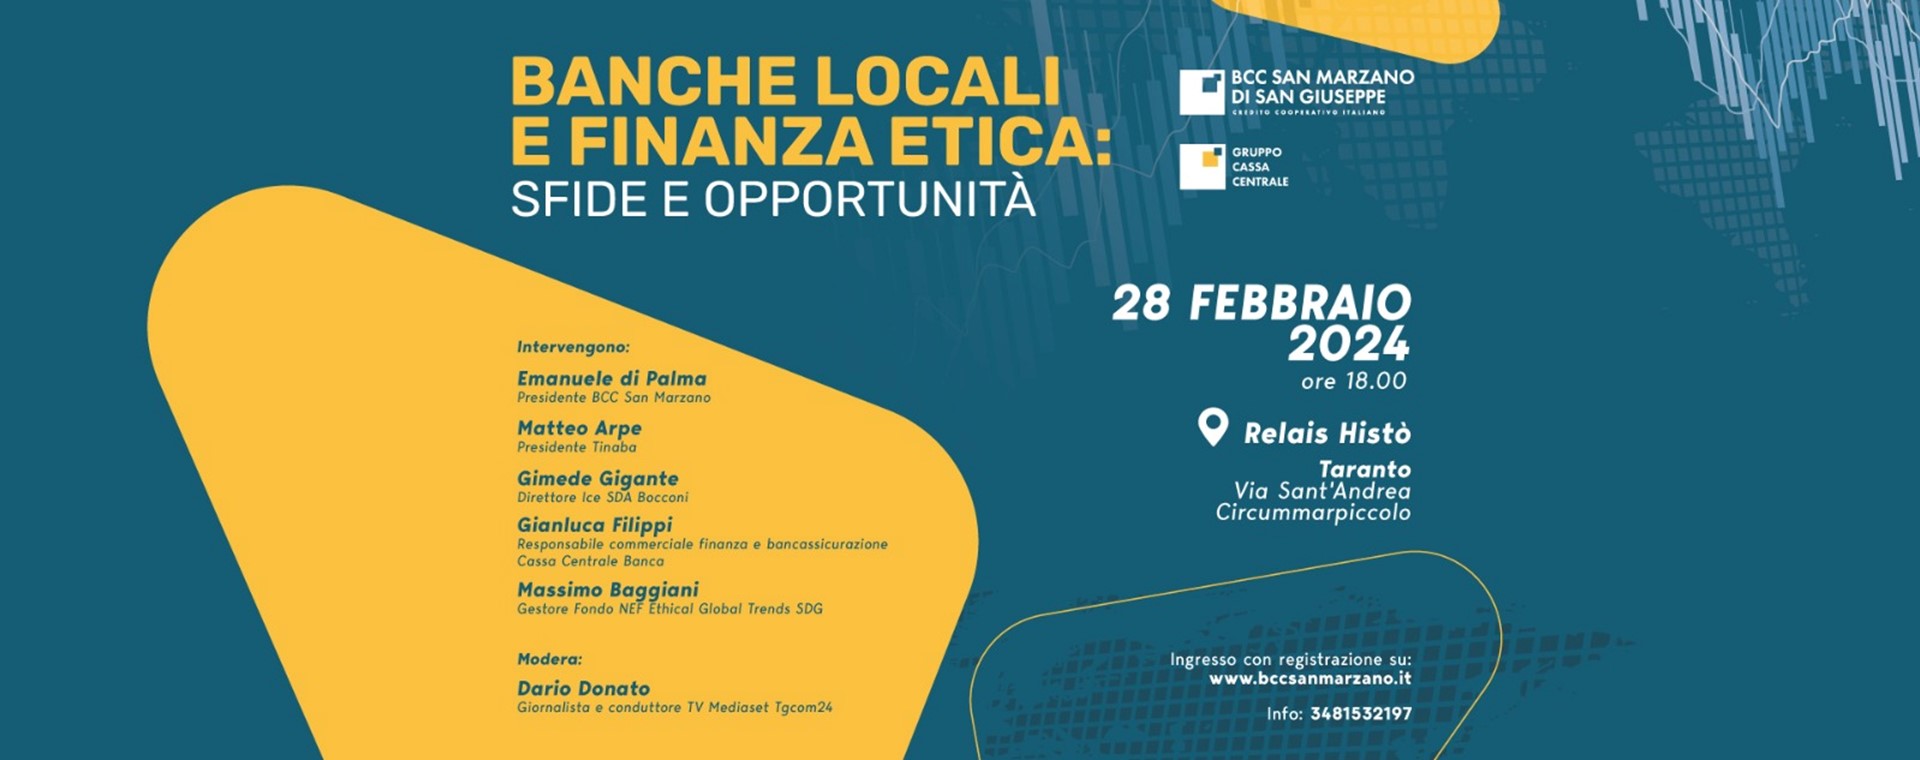 Banche Locali e Finanza Etica: sfide e opportunità 